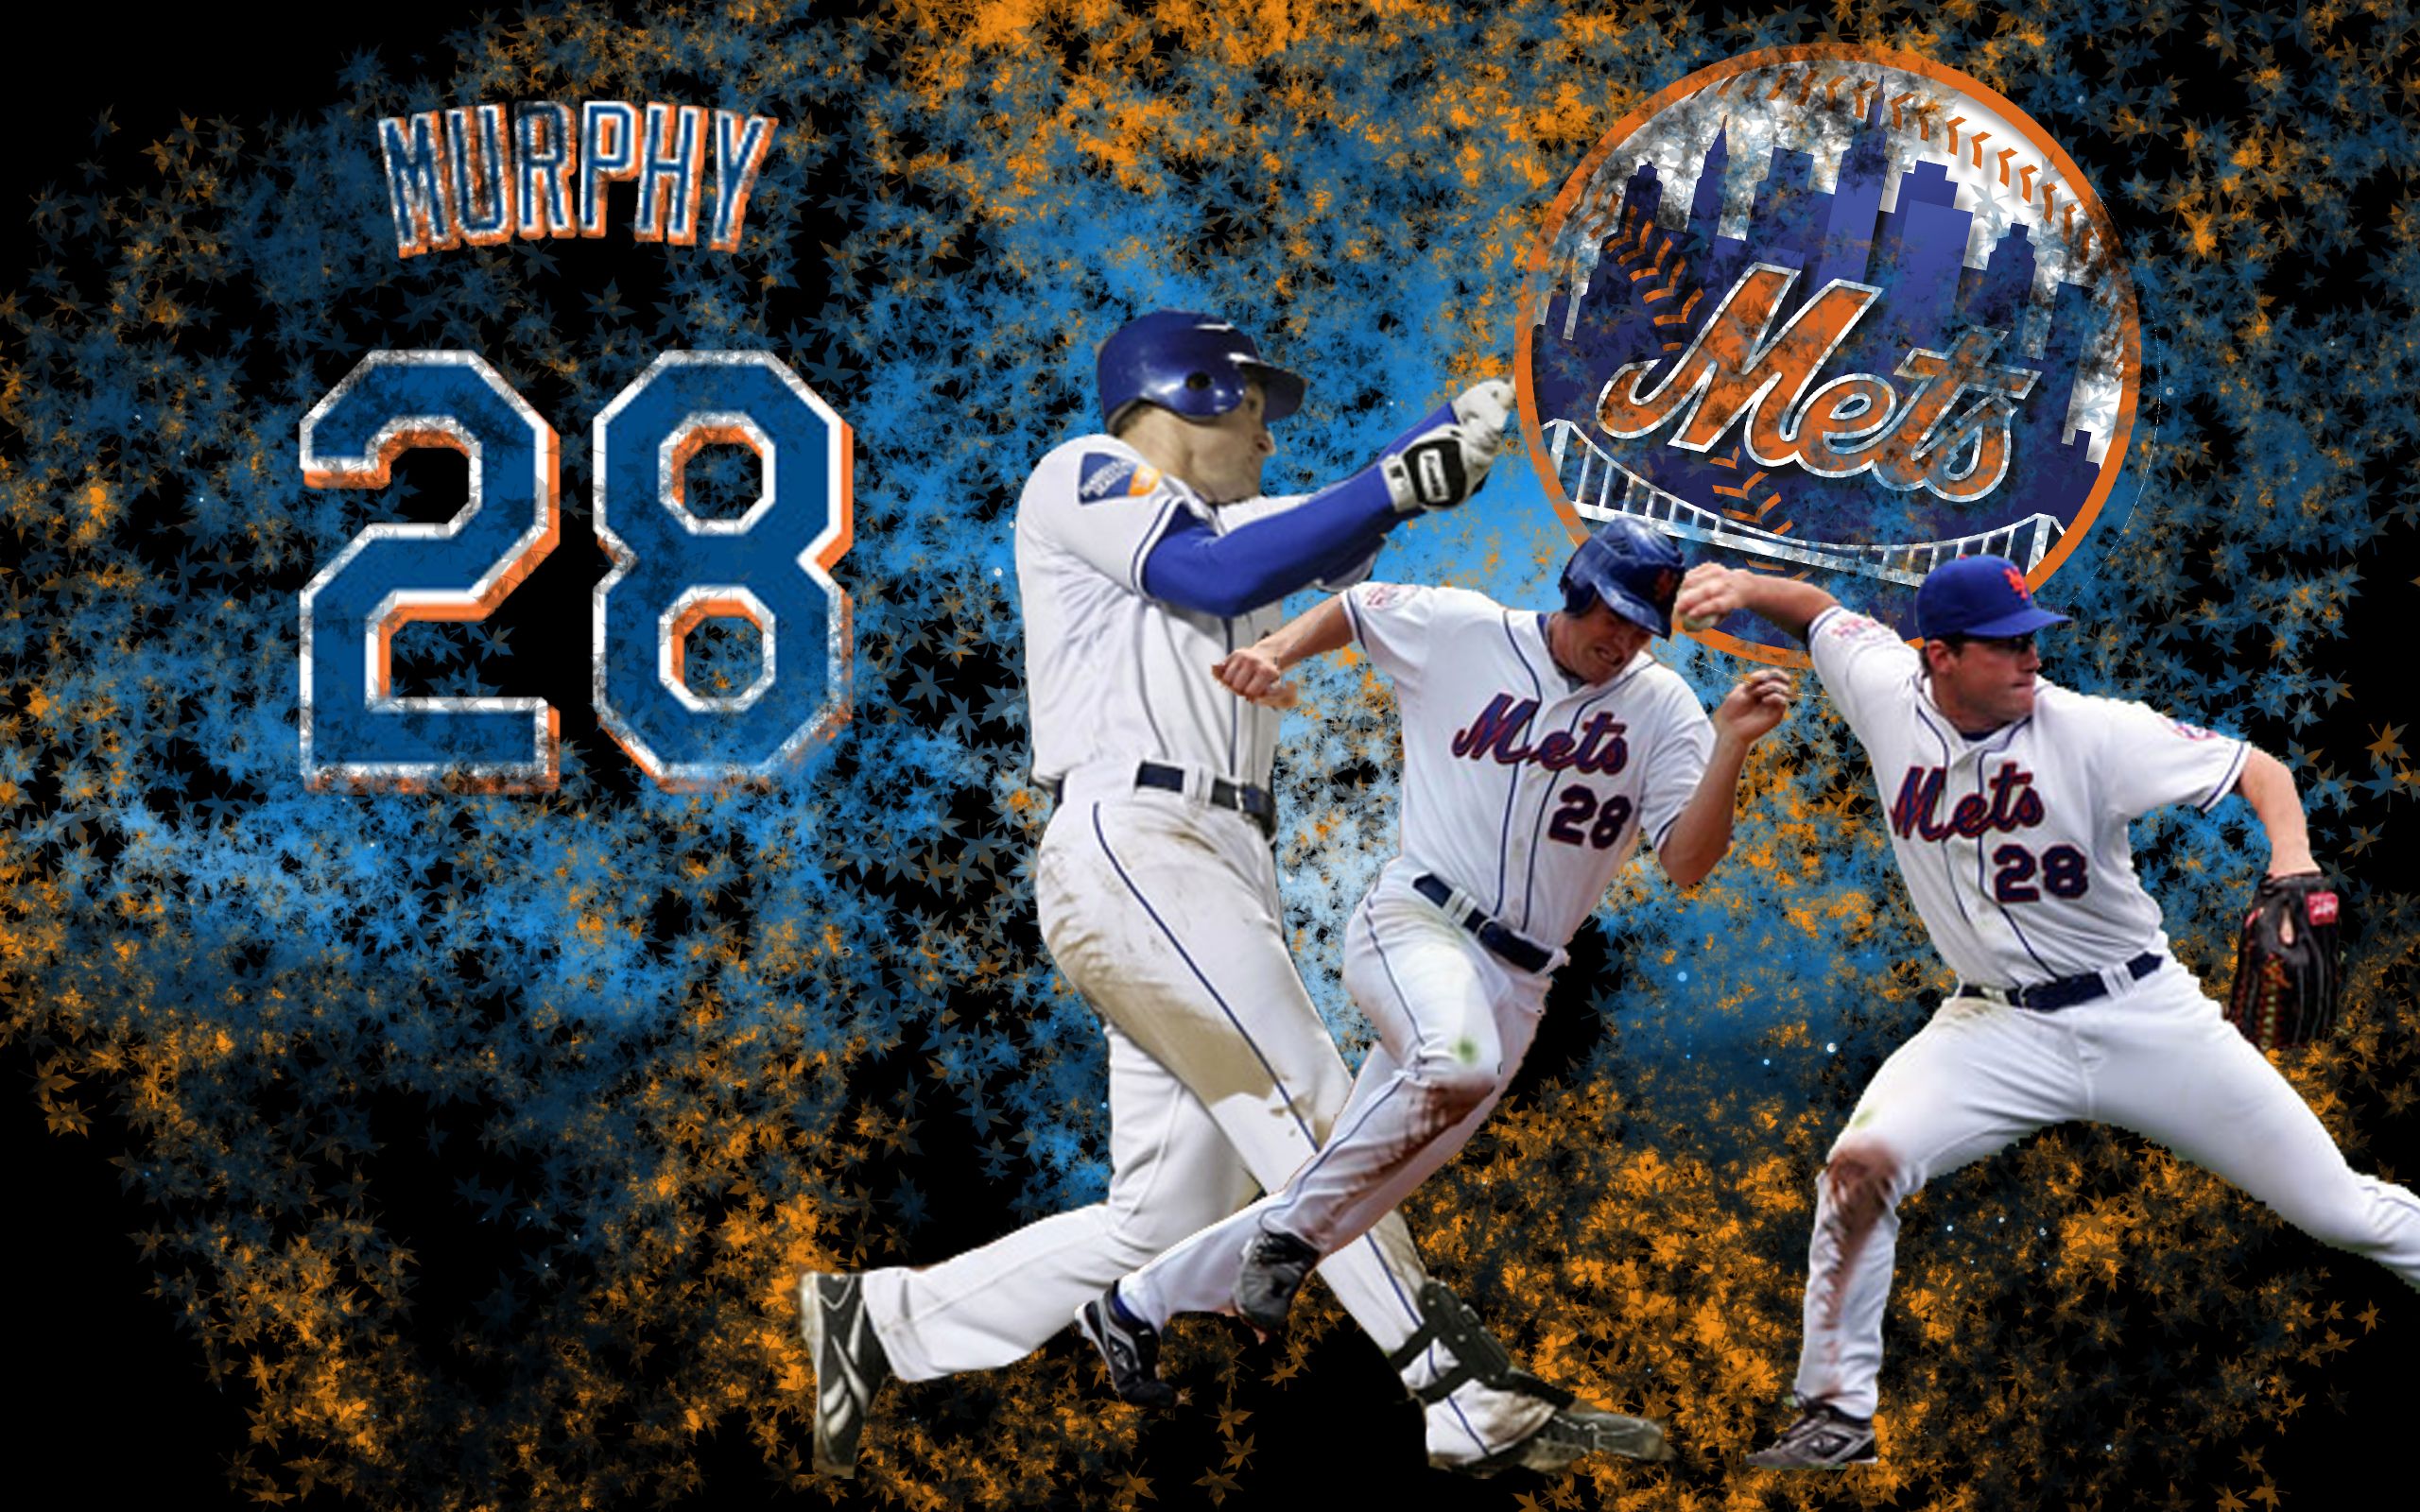 Free download New York Mets wallpaper New York Mets background [2560x1600] for your Desktop, Mobile & Tablet. Explore Free NY Mets Wallpaper. NY Mets Wallpaper Desktop